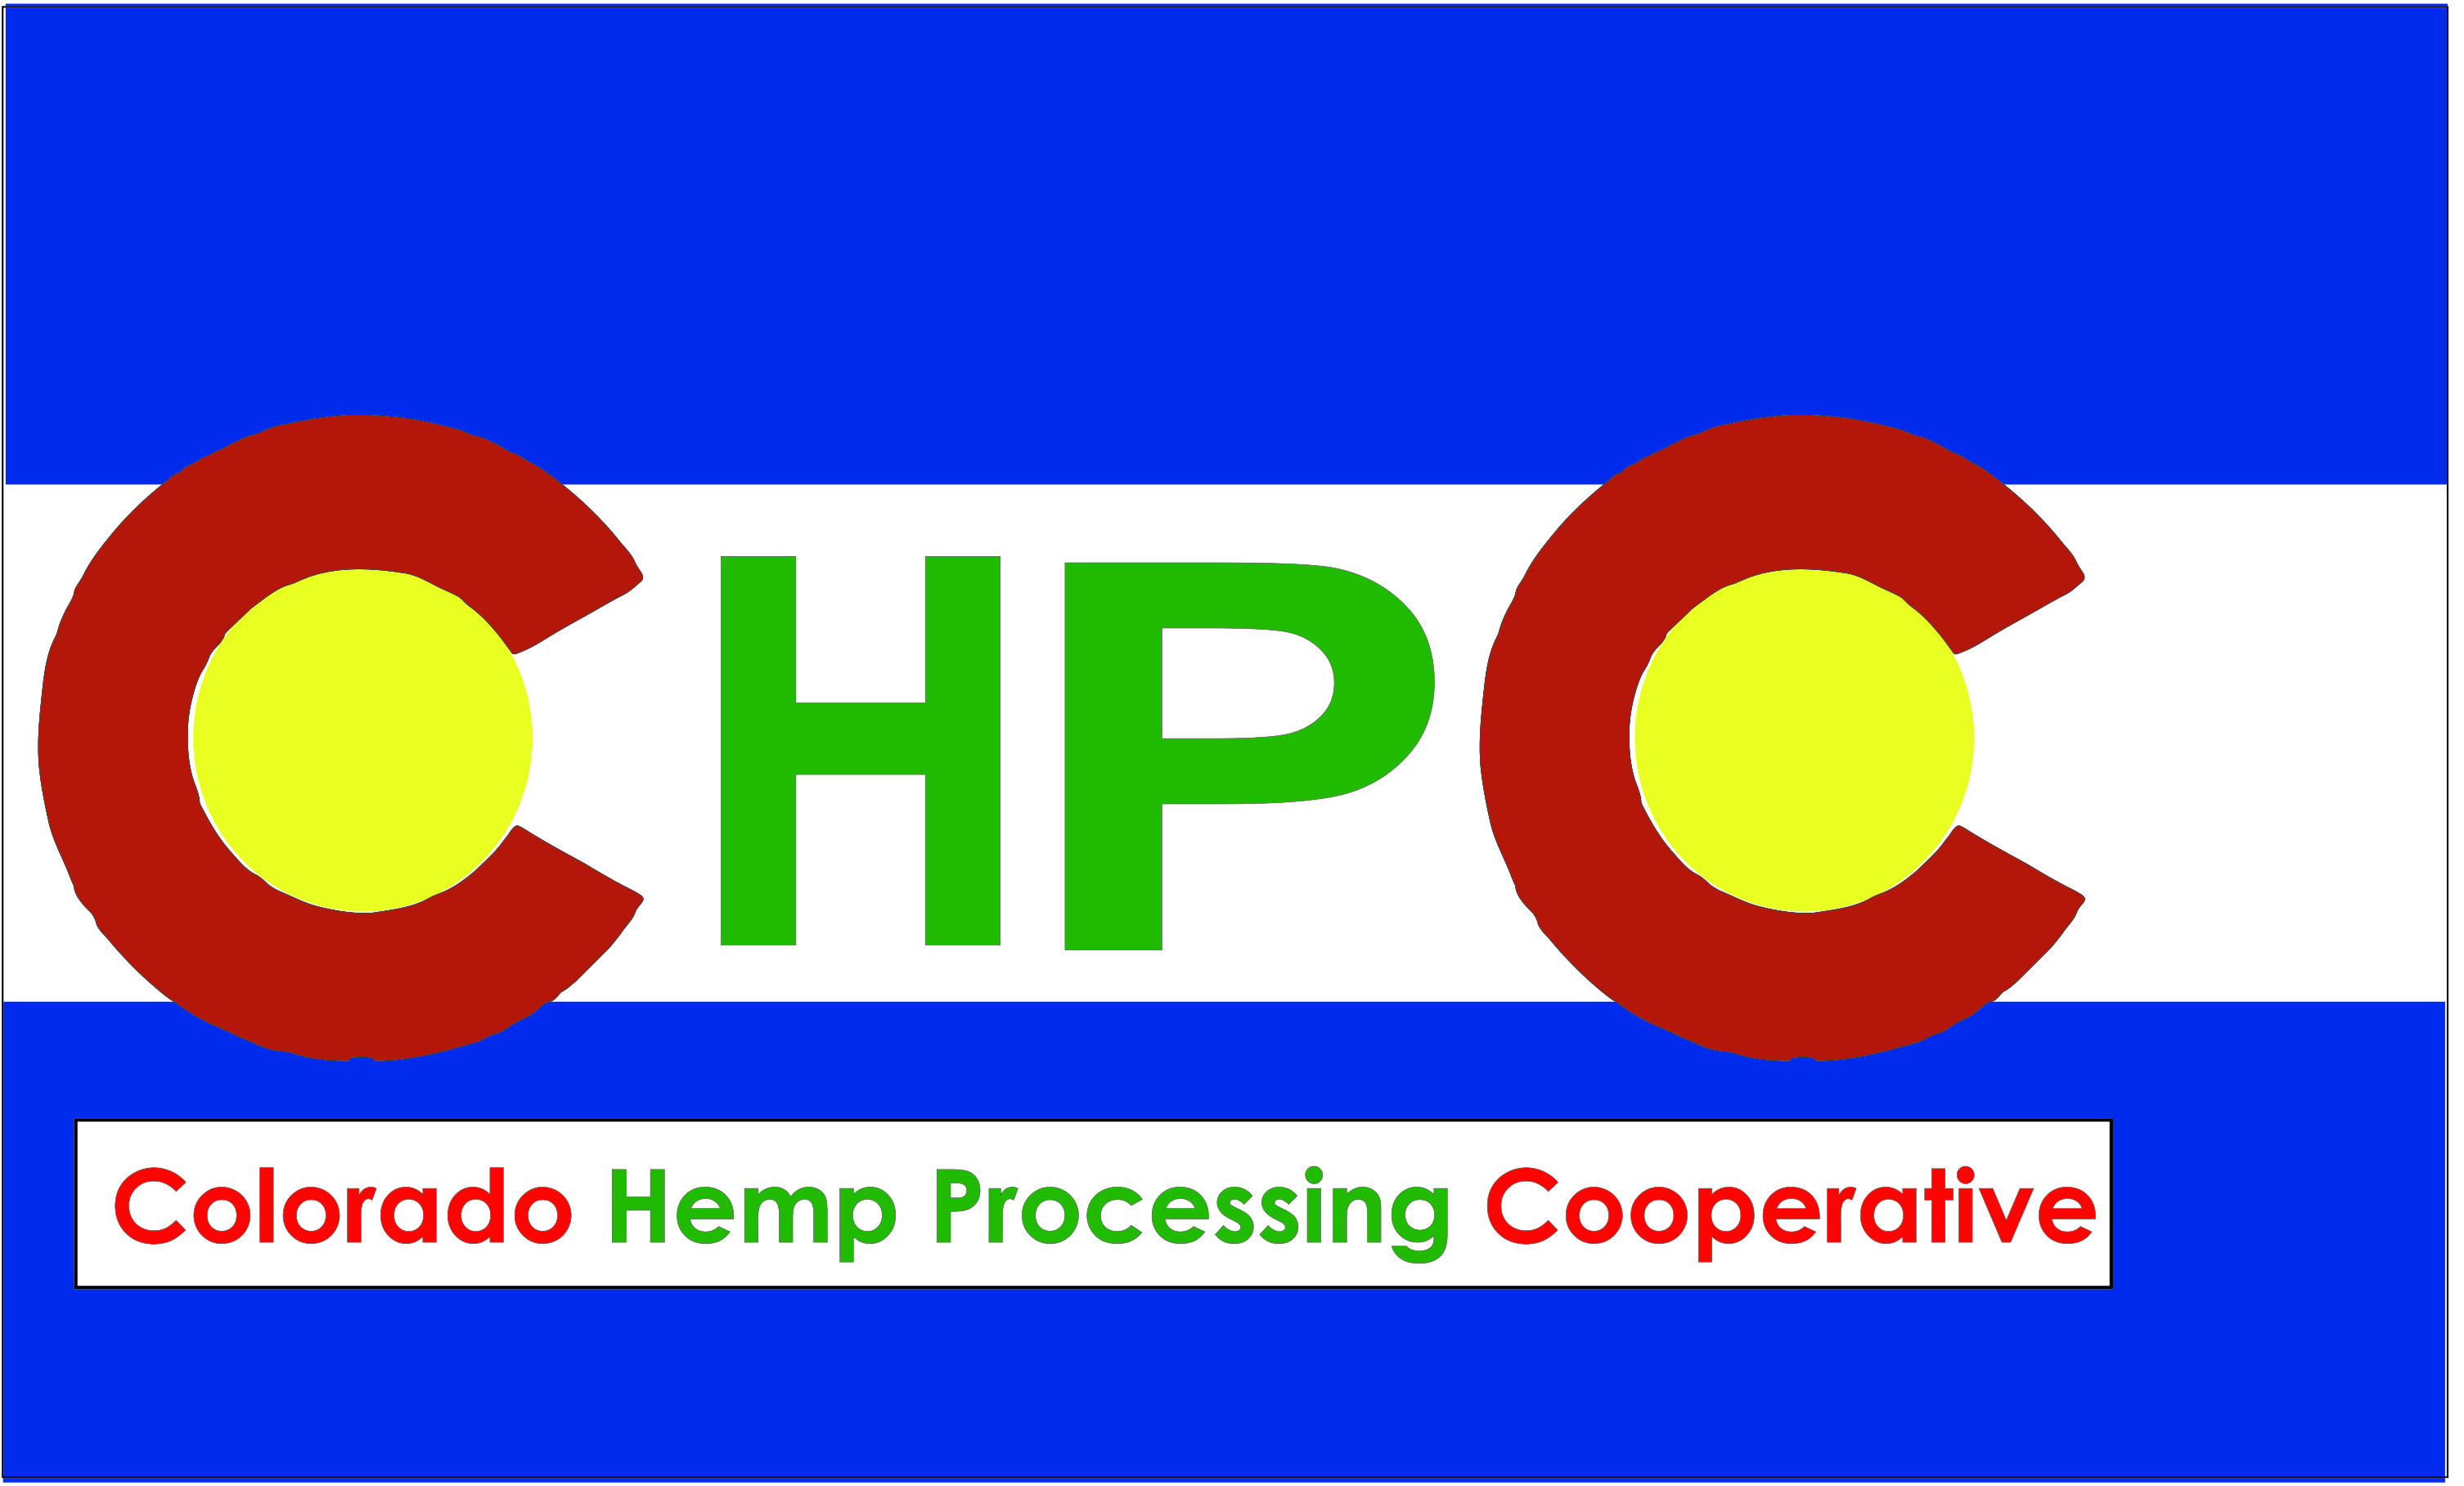 Colorado Hemp Processing Cooperative